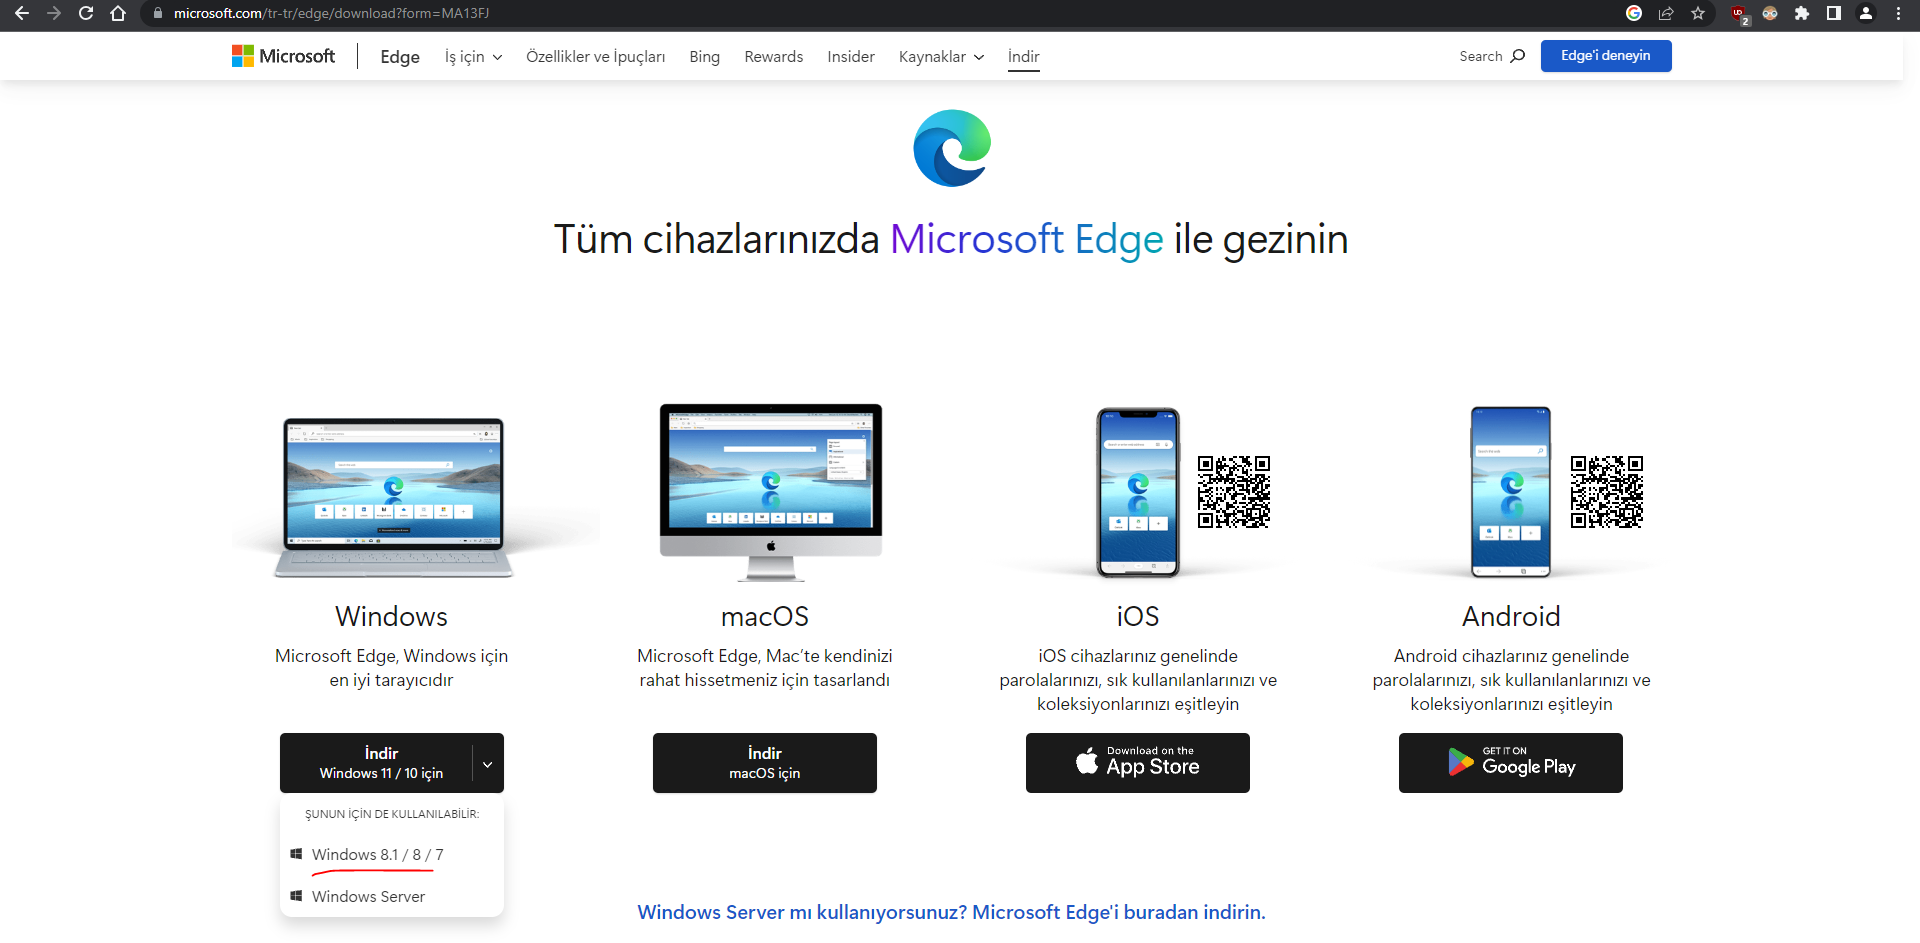 Çözüldü: Windows 8.1'e Microsoft Edge nasıl indirilir? | Technopat Sosyal